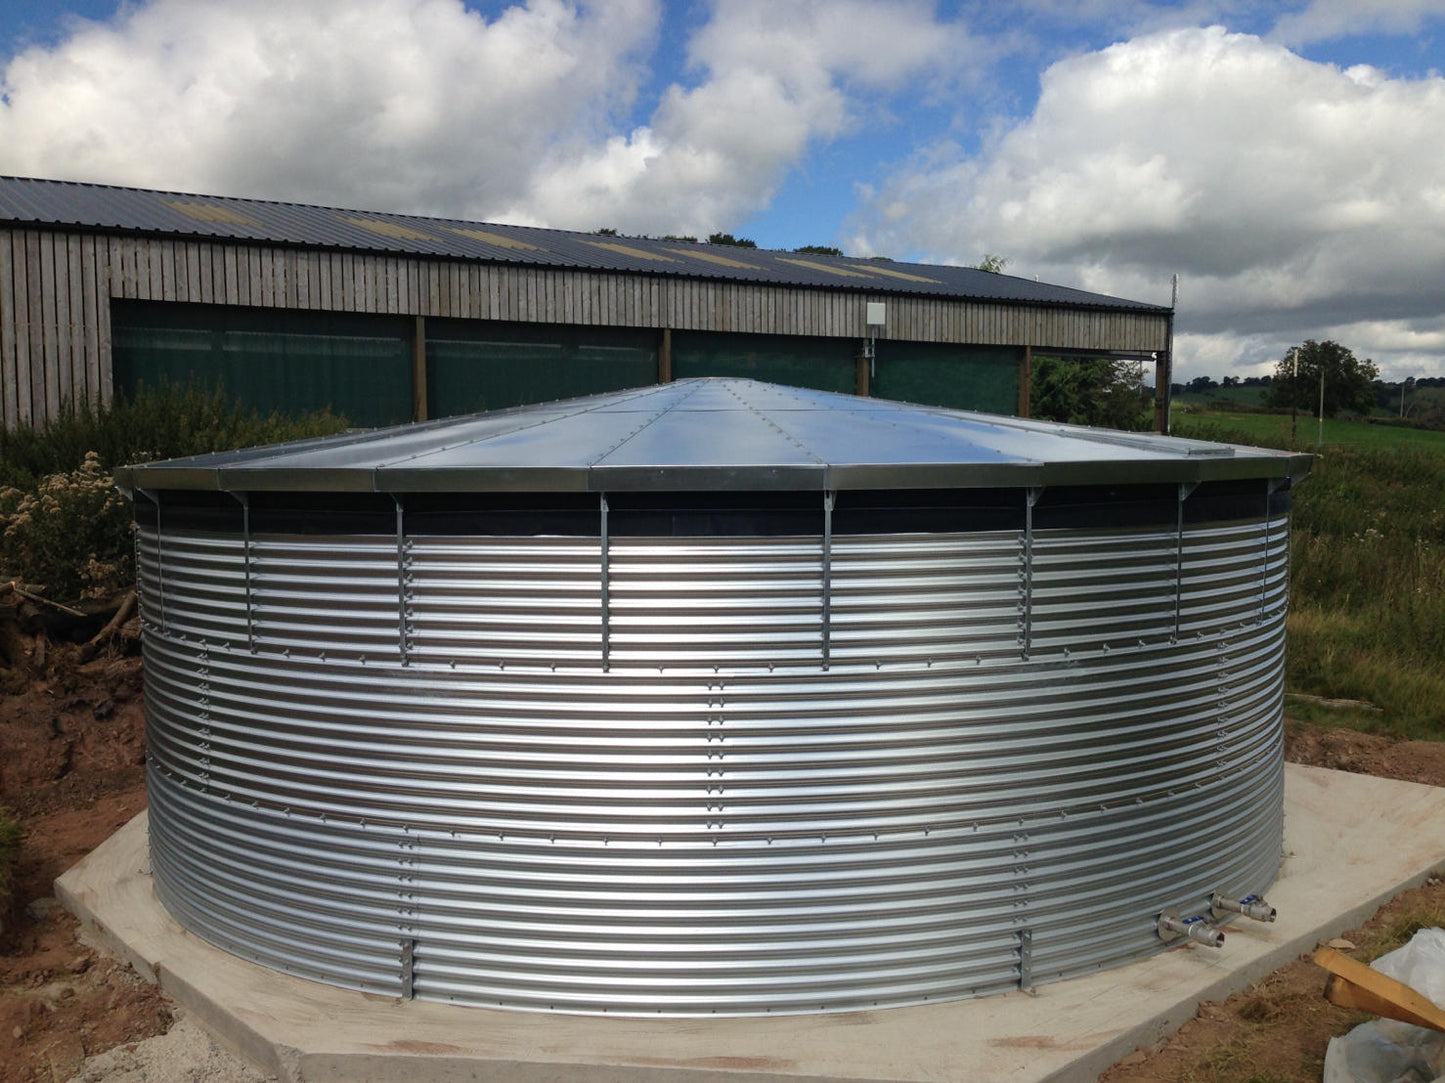 37,500 litre Galvanised Steel Water Tank